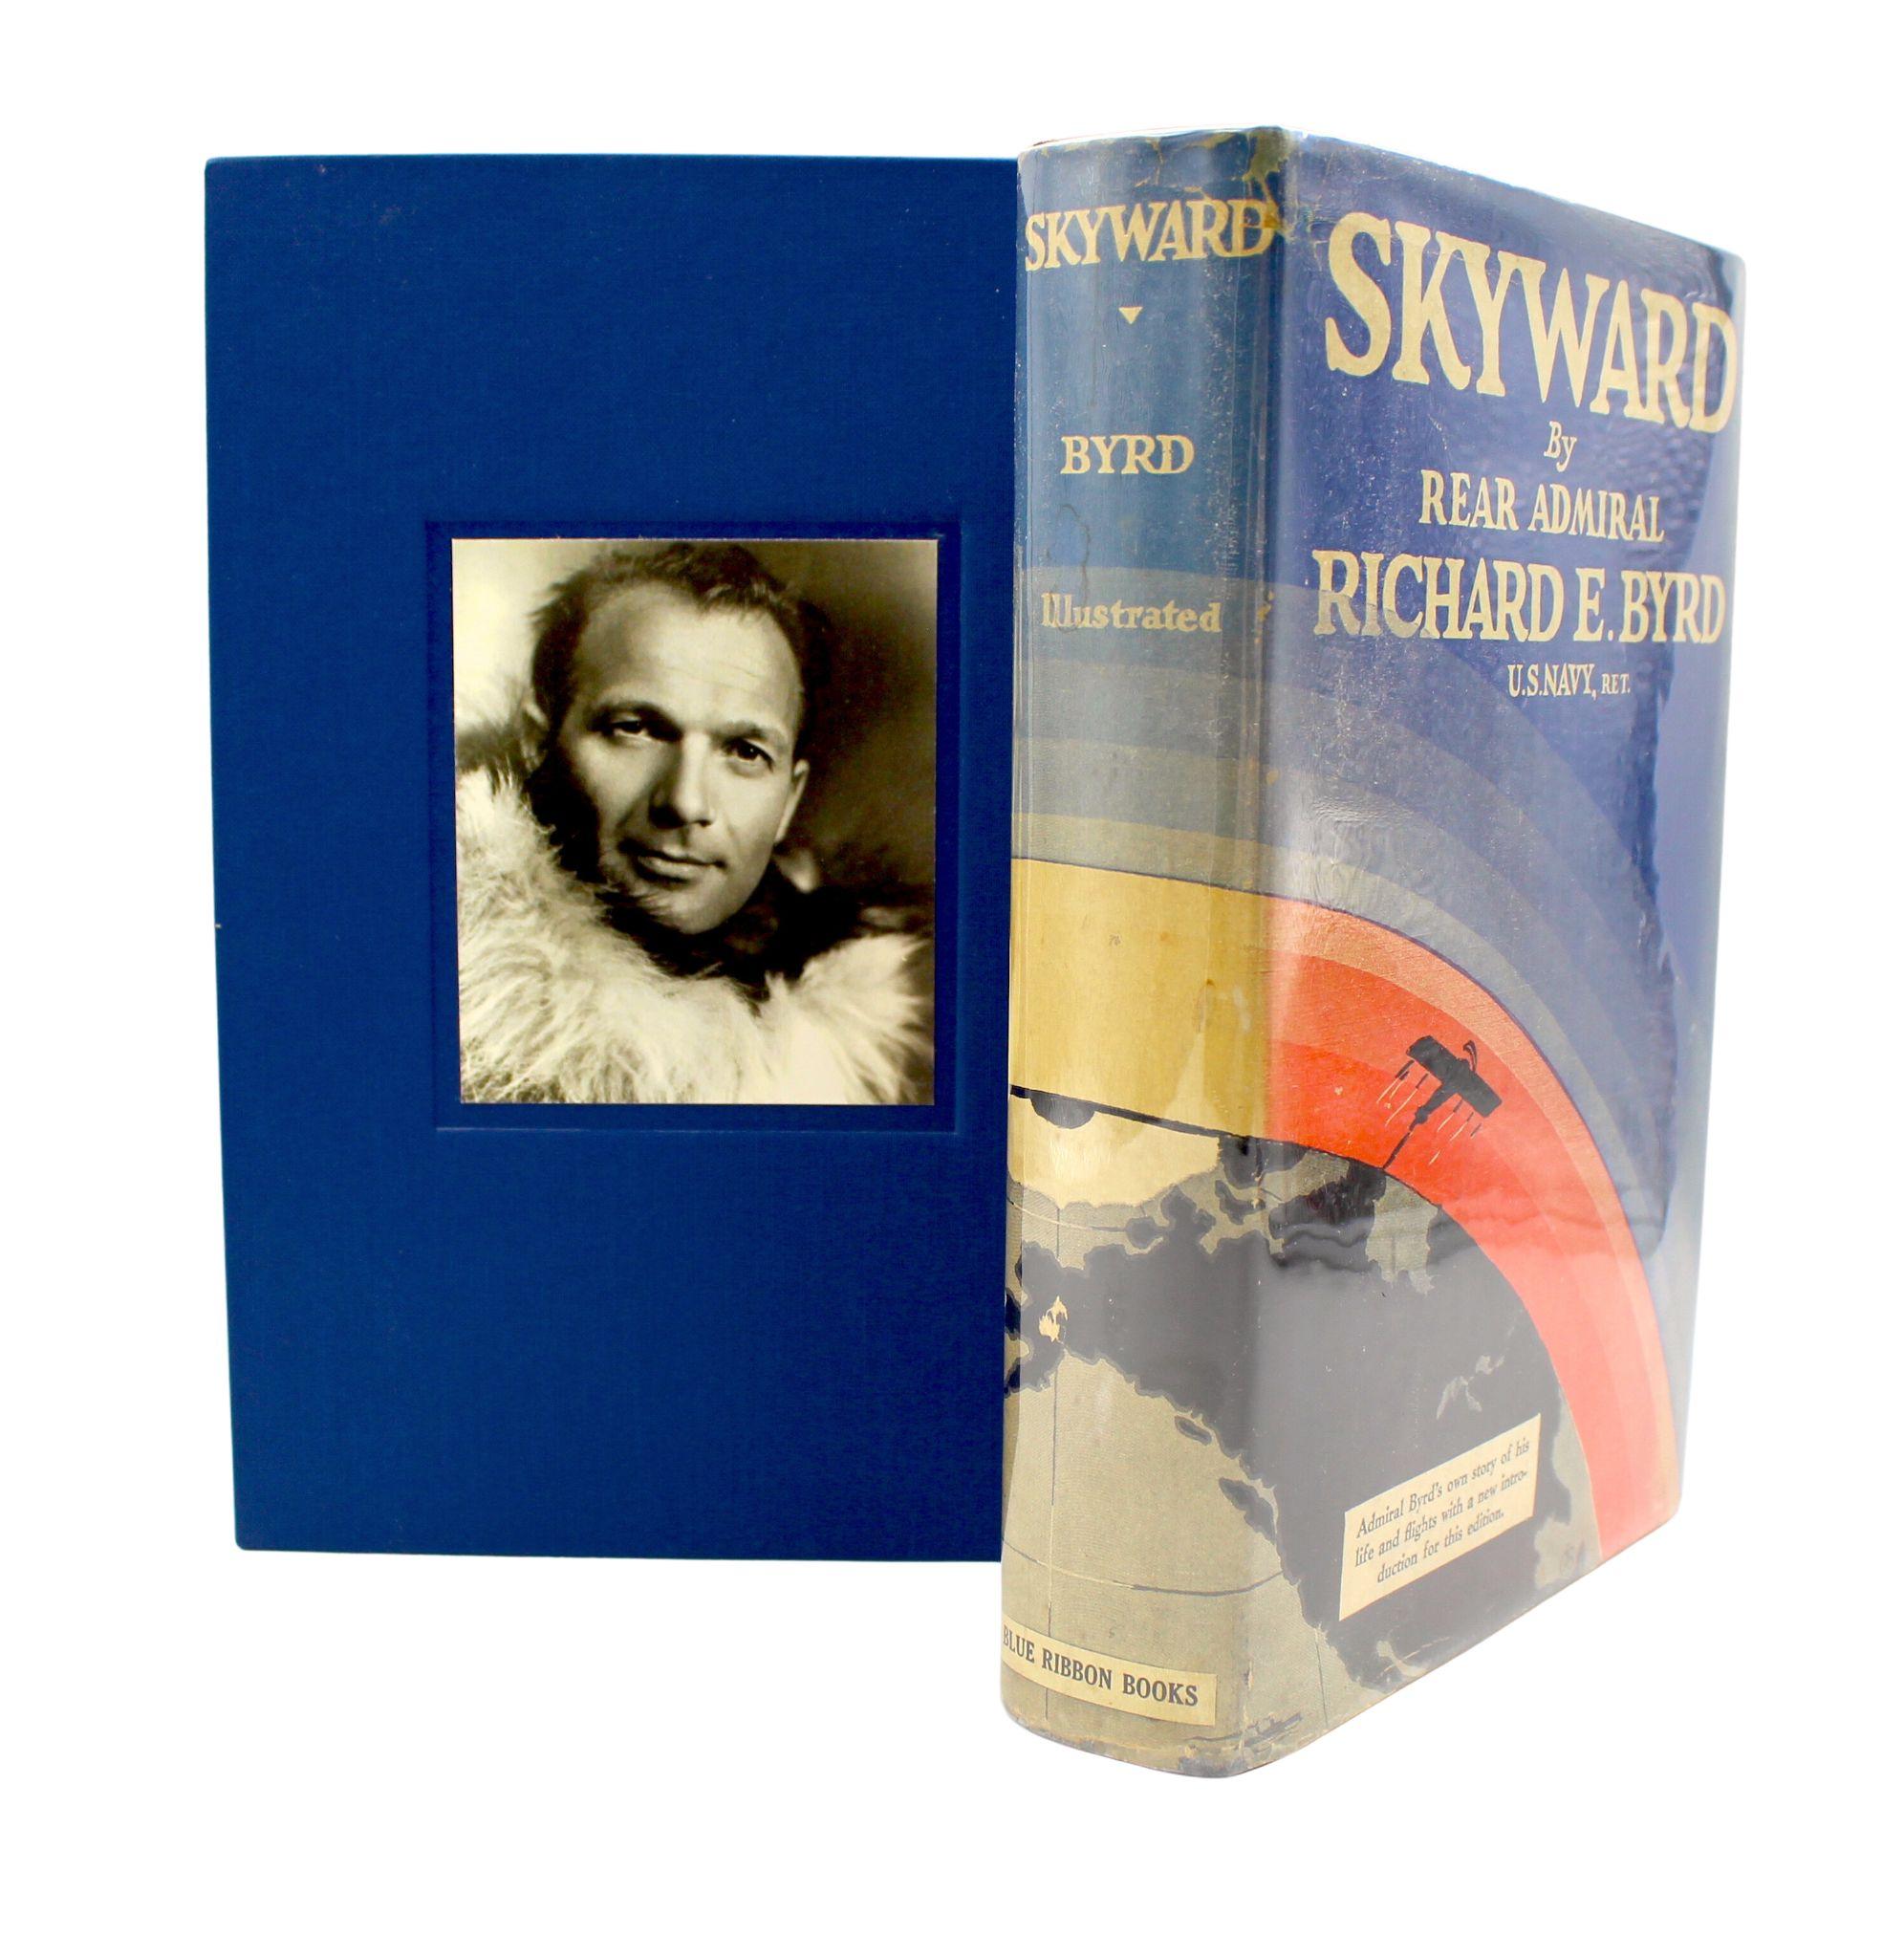 Byrd, Richard E. Skyward. New York: Blue Ribbon Books, 1931. Octavo. Erste Ausgabe, elfter Druck. In Original-Hardcover und Original-Schutzumschlag. Präsentiert in einem neuen Archivschuber. 

Dies ist eine Erstausgabe von 1931, elfte Druck von